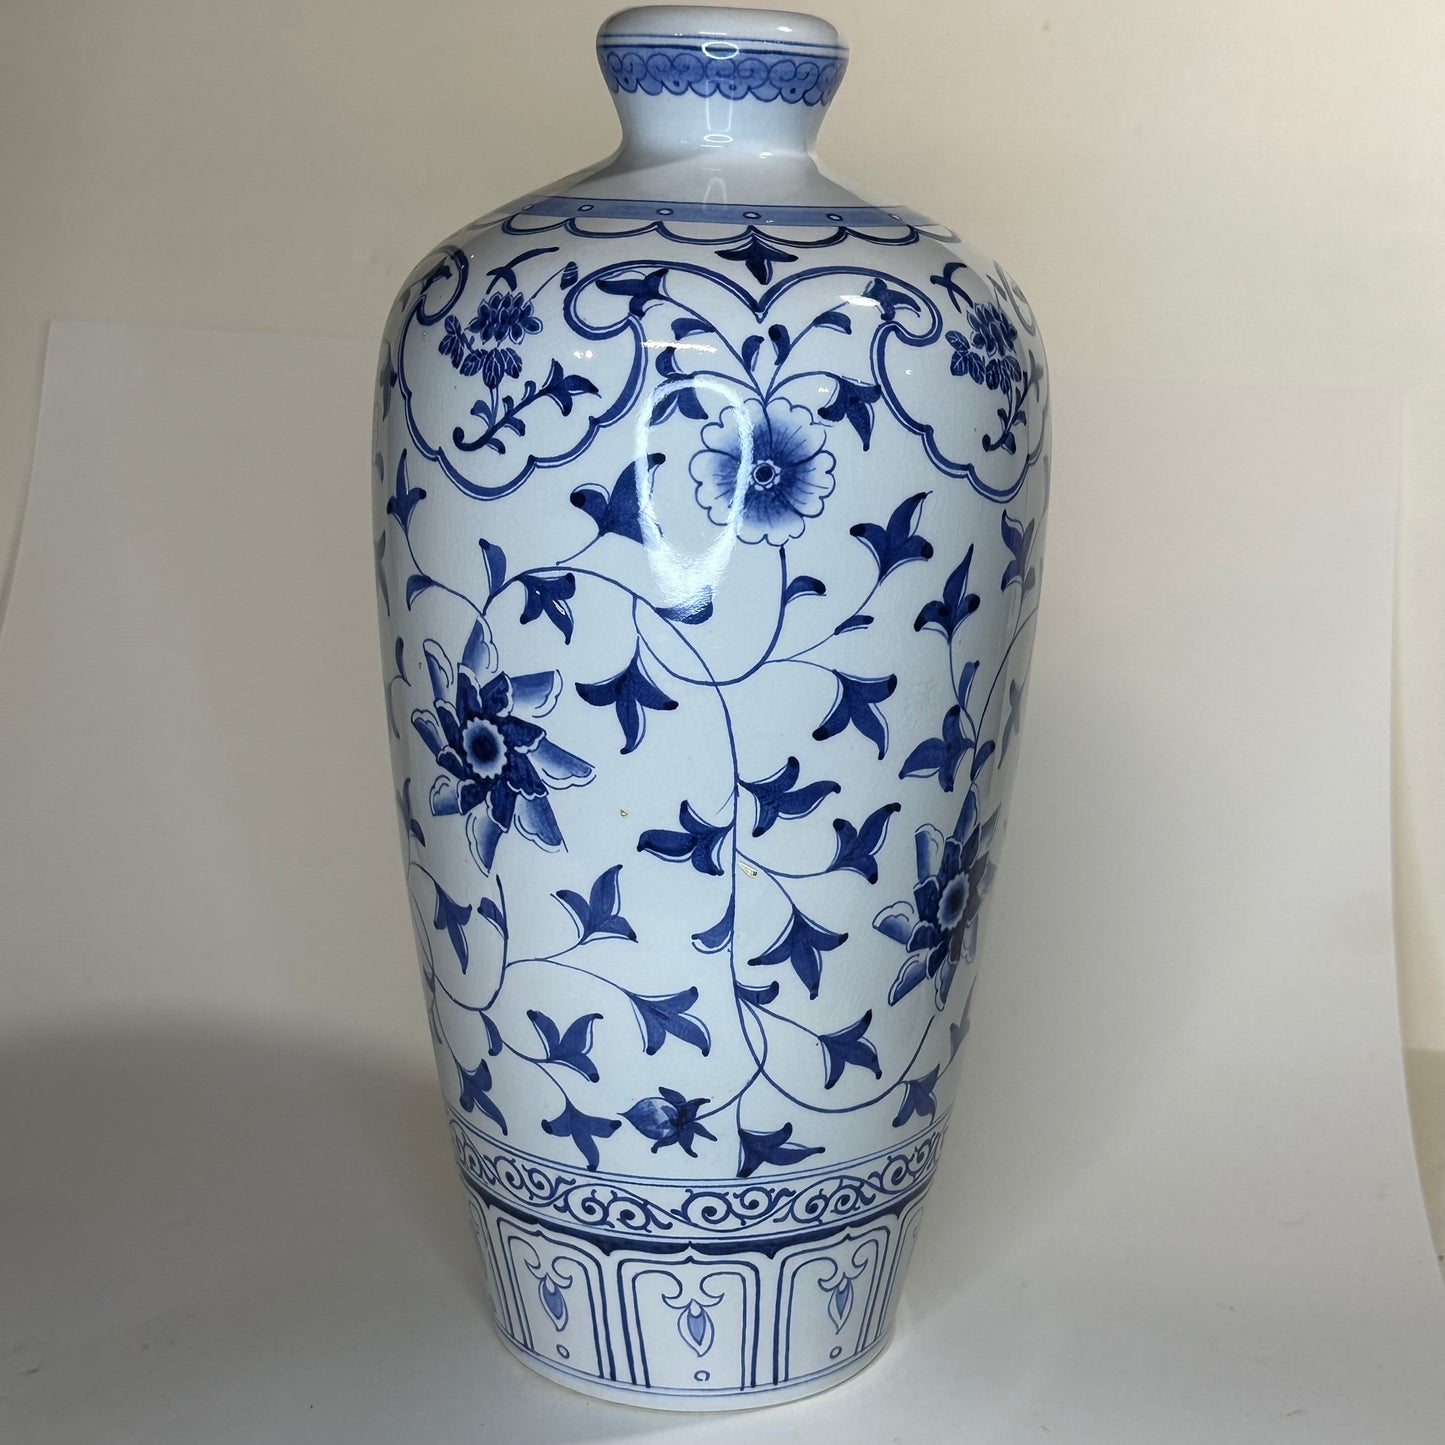 Vintage Taiwanese vase c1940s blue & white 10”